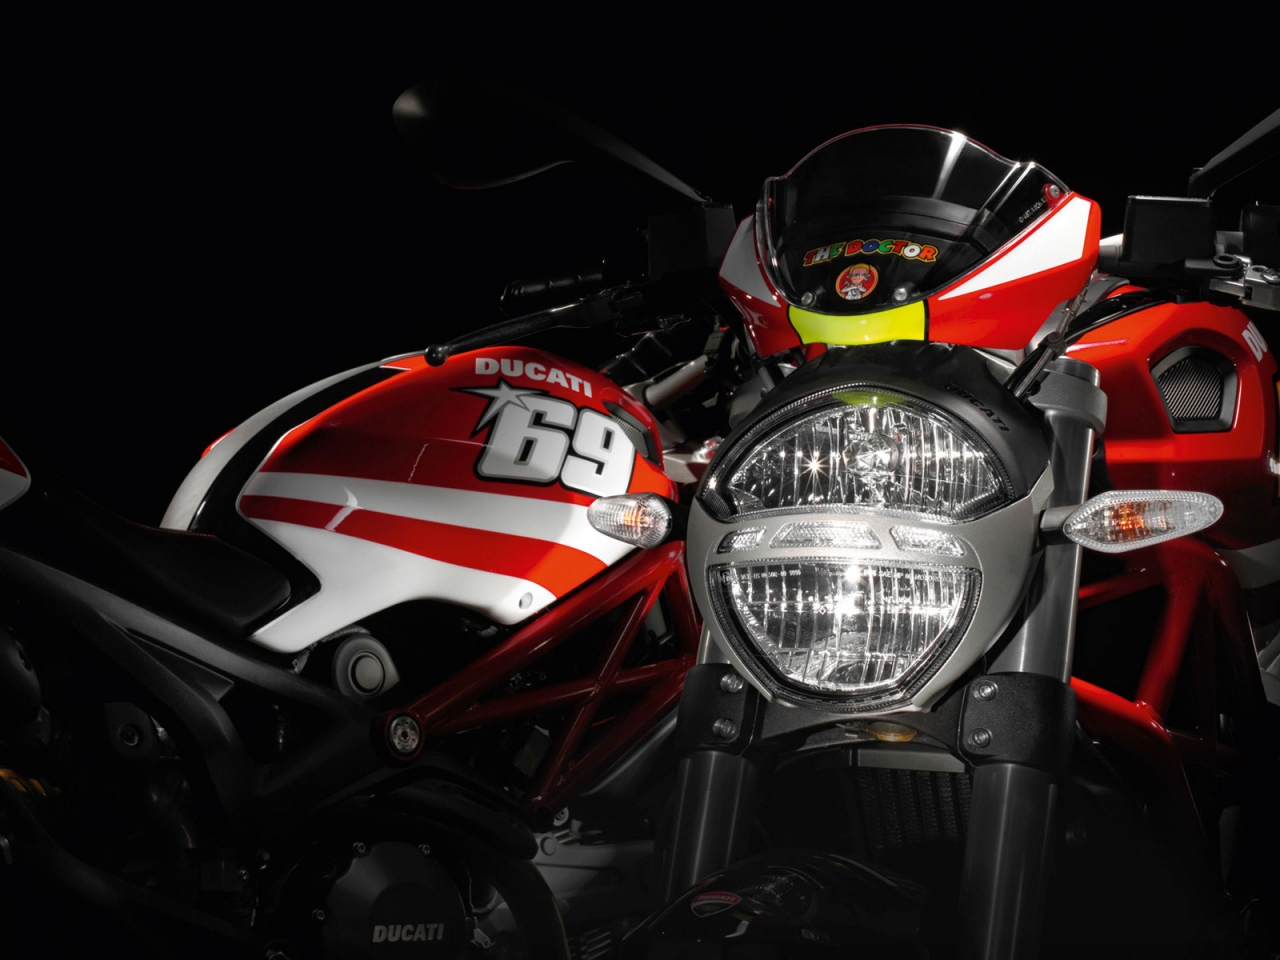 Ducati Rossi and Hayden Replica Ducati for 1280 x 960 resolution